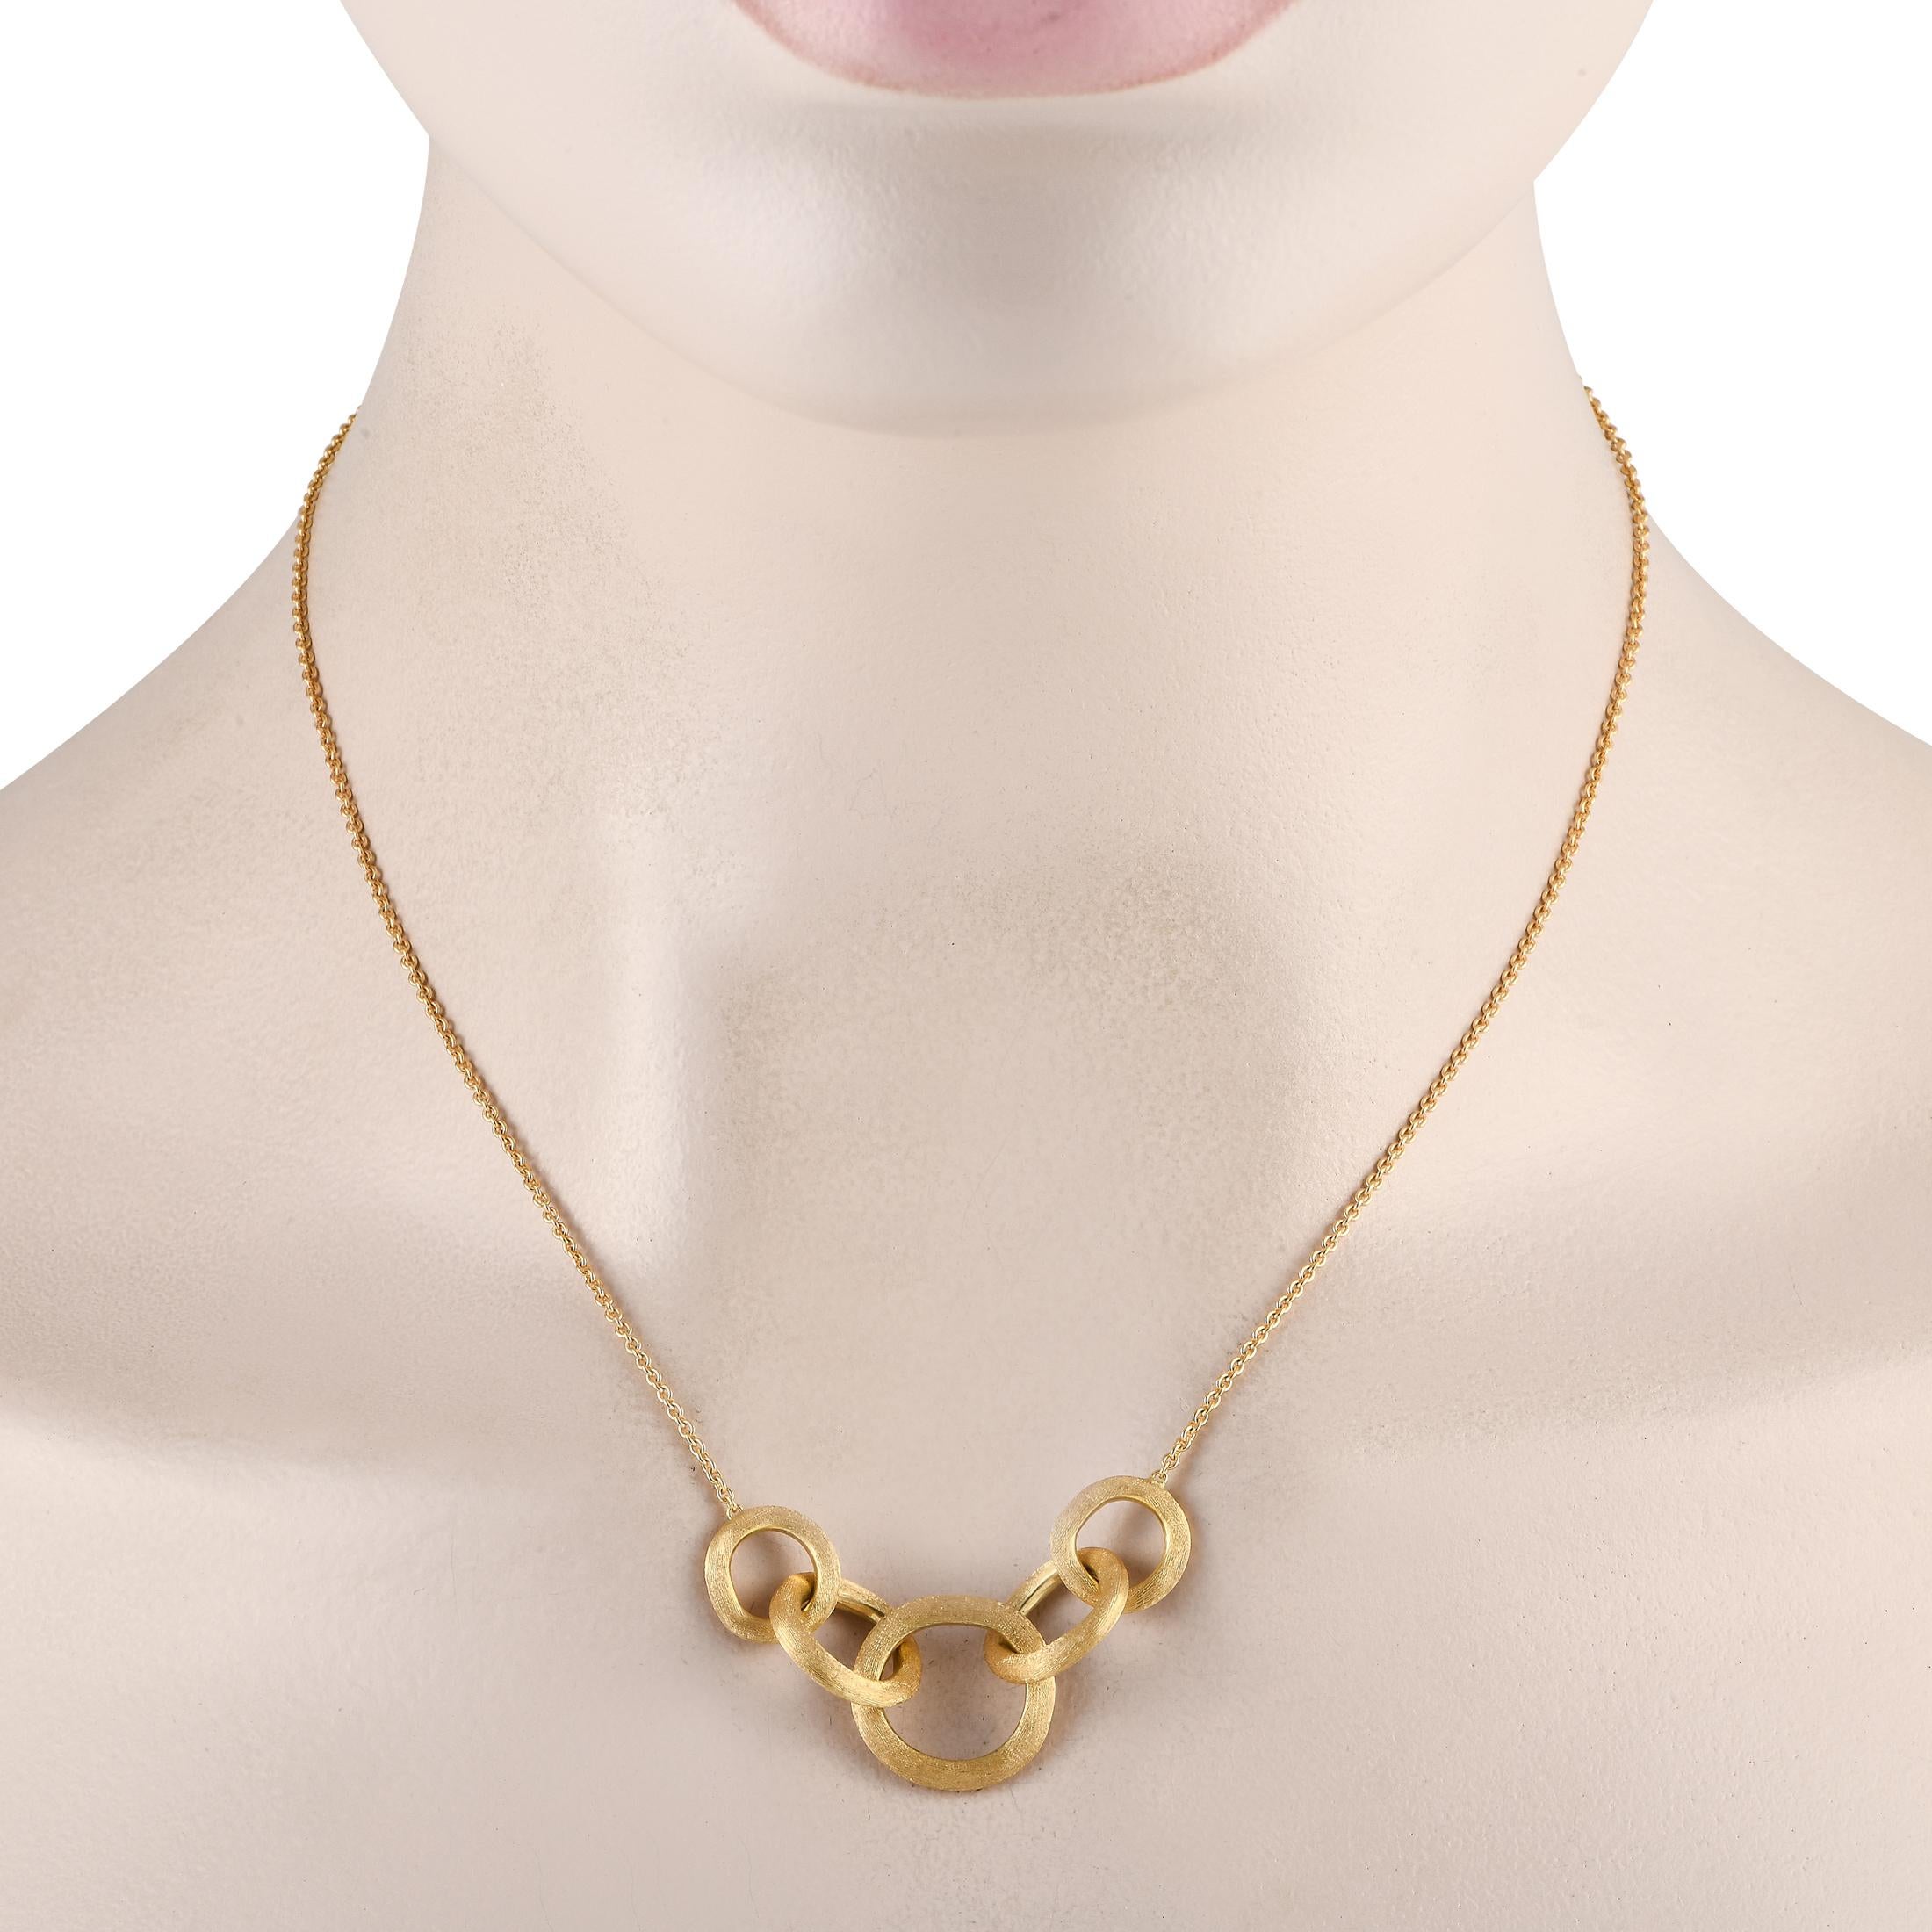 Ineinander greifende Kreise bilden den Mittelpunkt einer 16er Kette an dieser beeindruckenden Marco Bicego Jaipur Halskette. Das schlichte, zurückhaltende und elegante Design des 18-karätigen Gelbgoldes wurde von Hand graviert, um eine seidenartige,